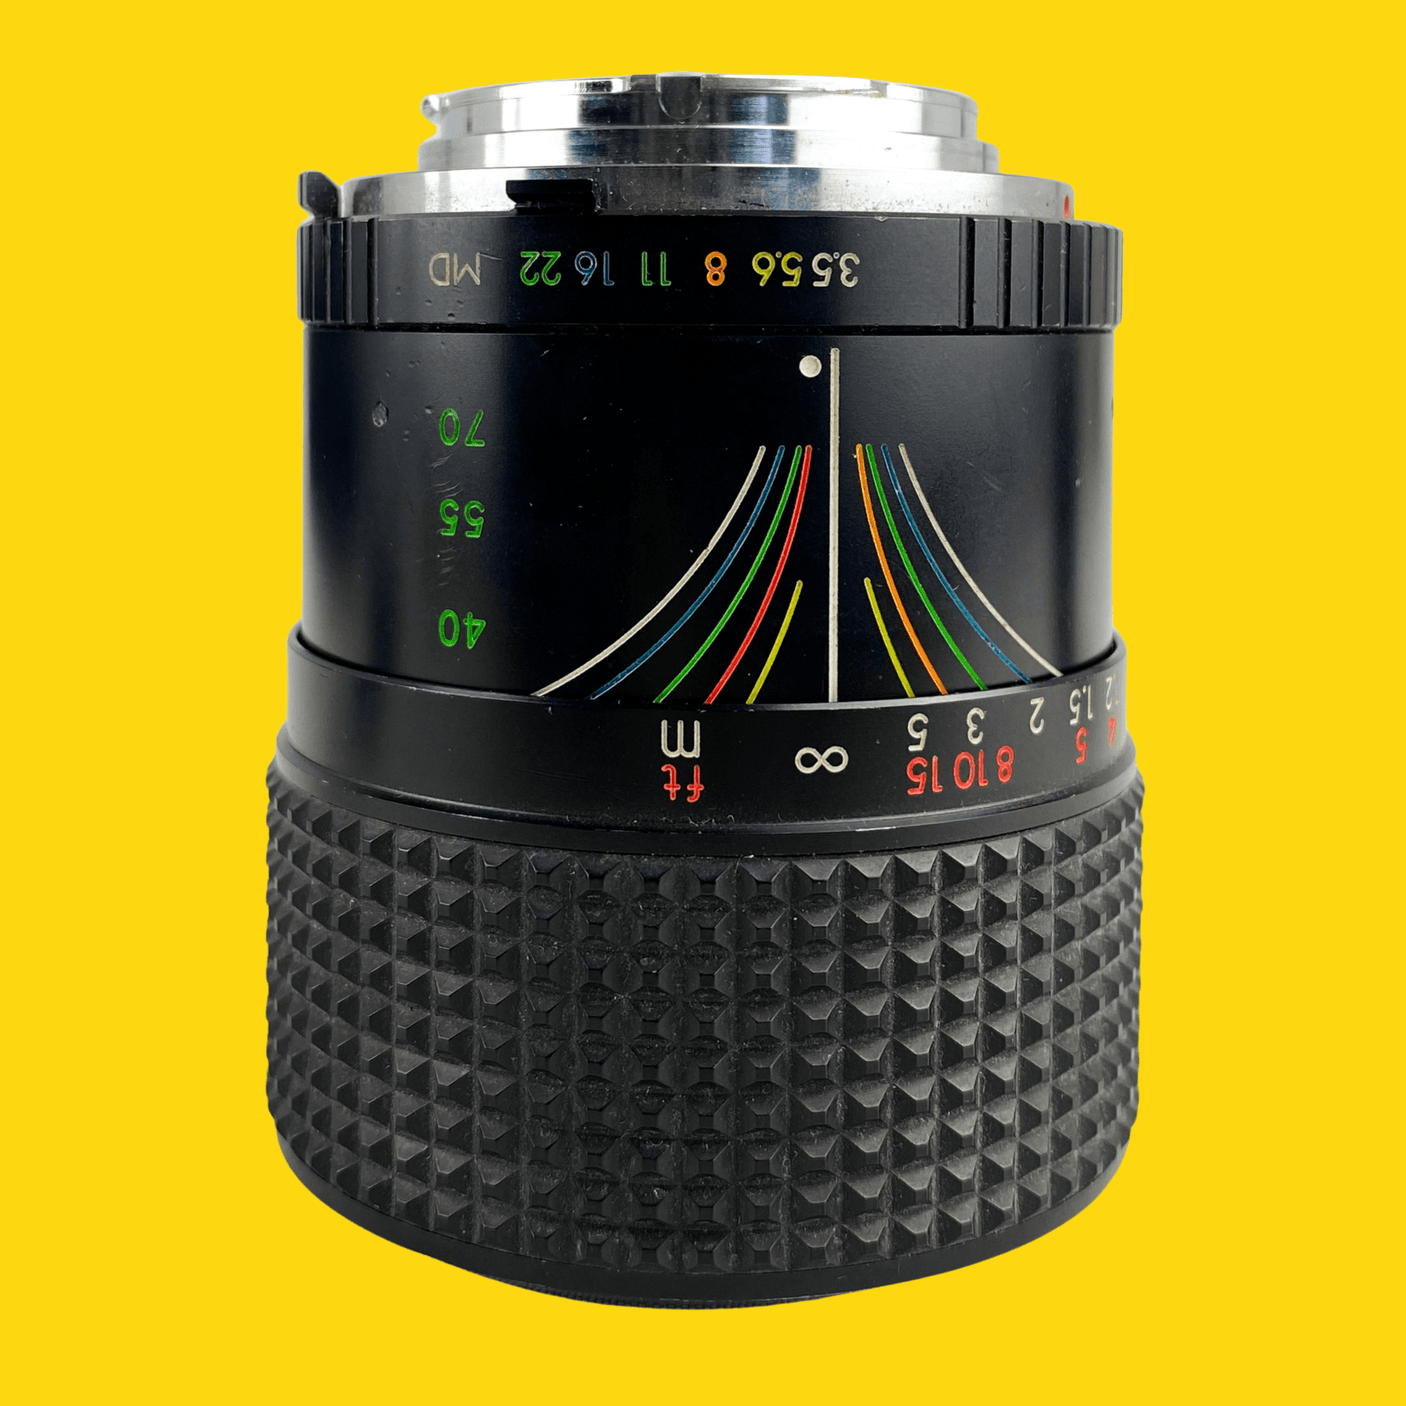 Sirius Macro 28-70mm F3.5 Lens